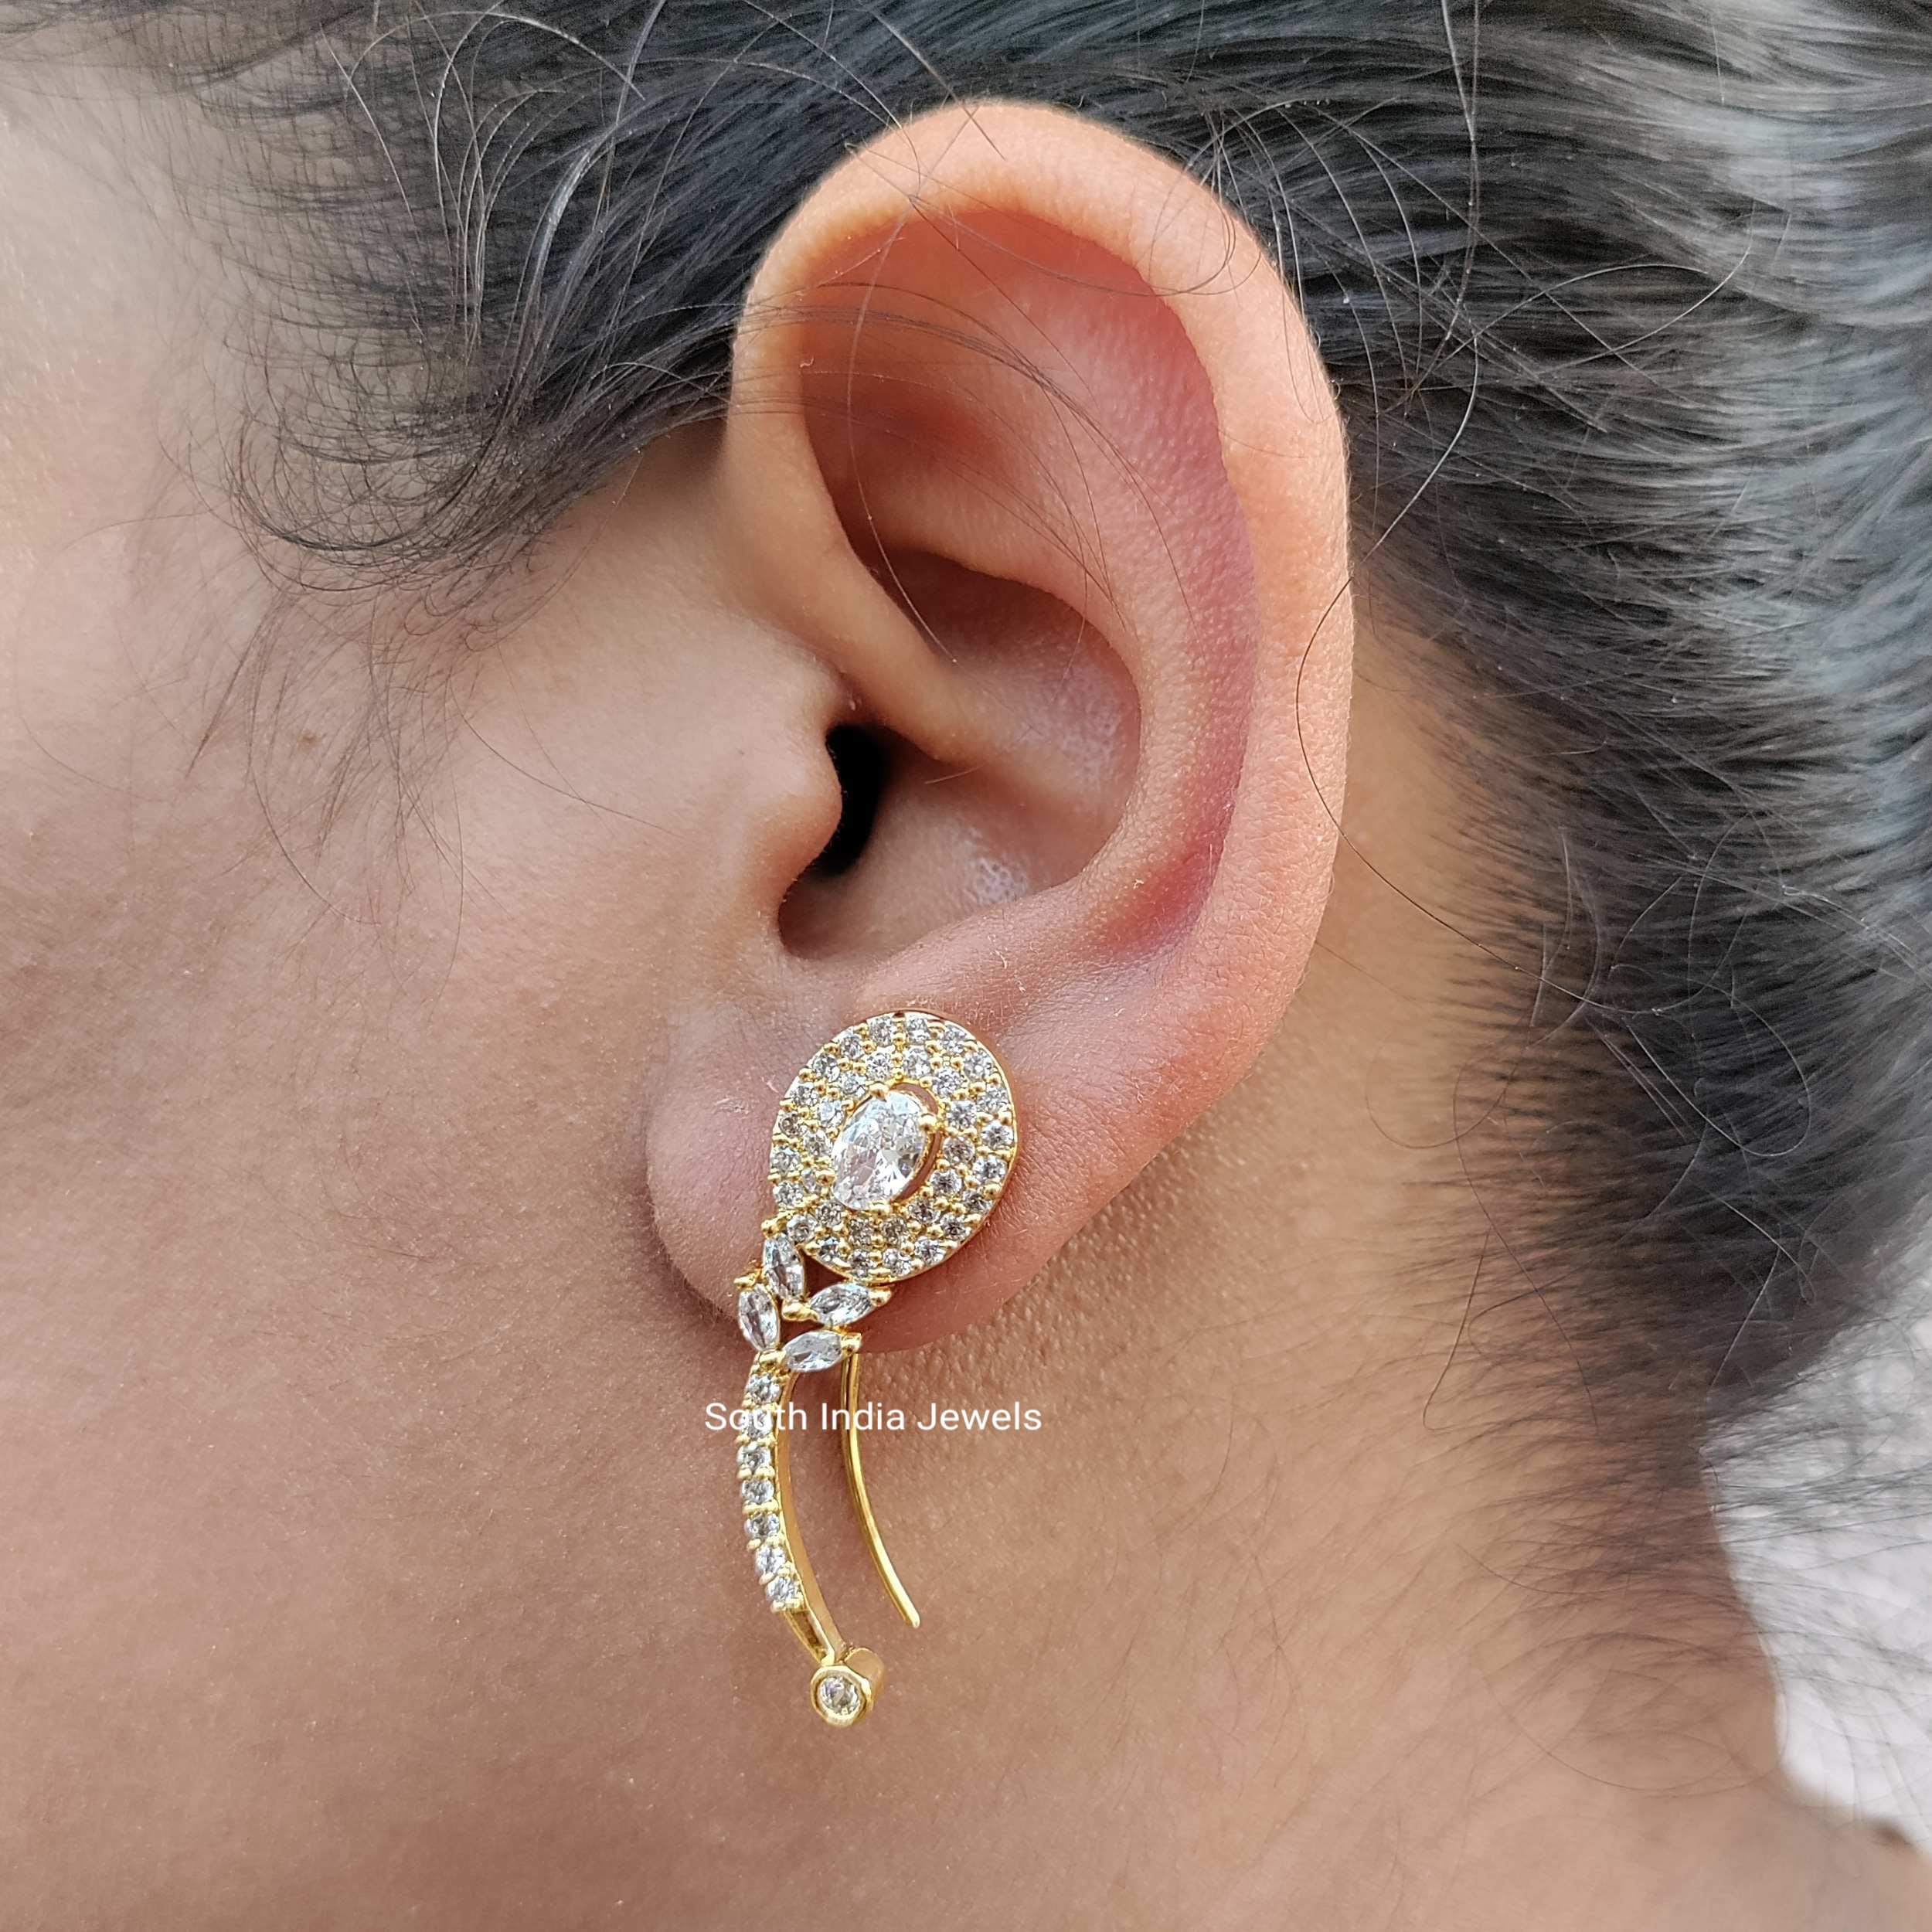 11 Best Ear Piercing Ideas For Earrings